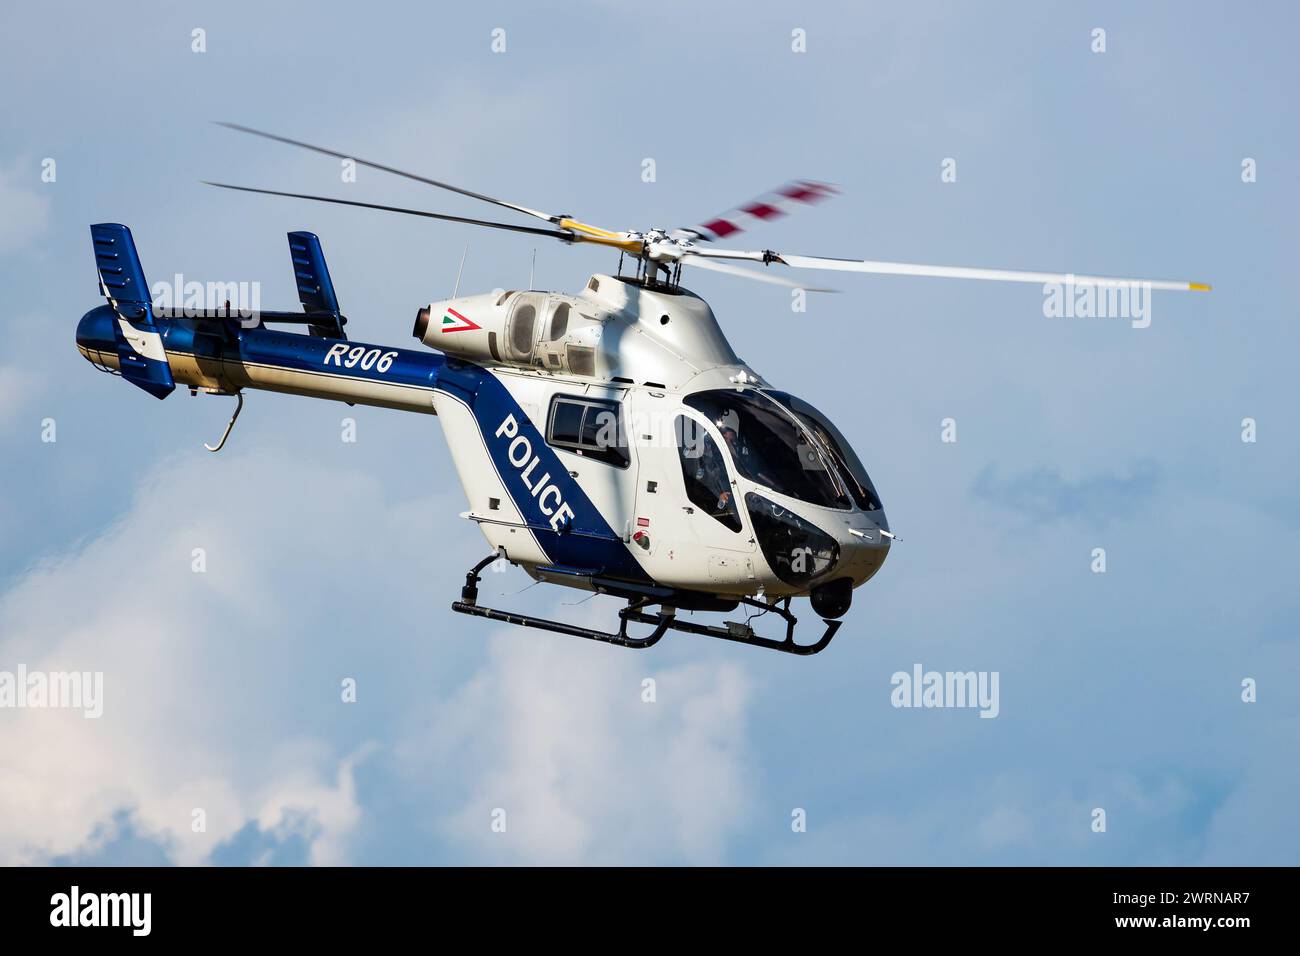 Siofok, Hongrie - 3 août 2021 : hélicoptère de la police gouvernementale à l'aéroport et à l'aérodrome. Giravion. Industrie aéronautique générale. Transpor utilitaire de police Banque D'Images